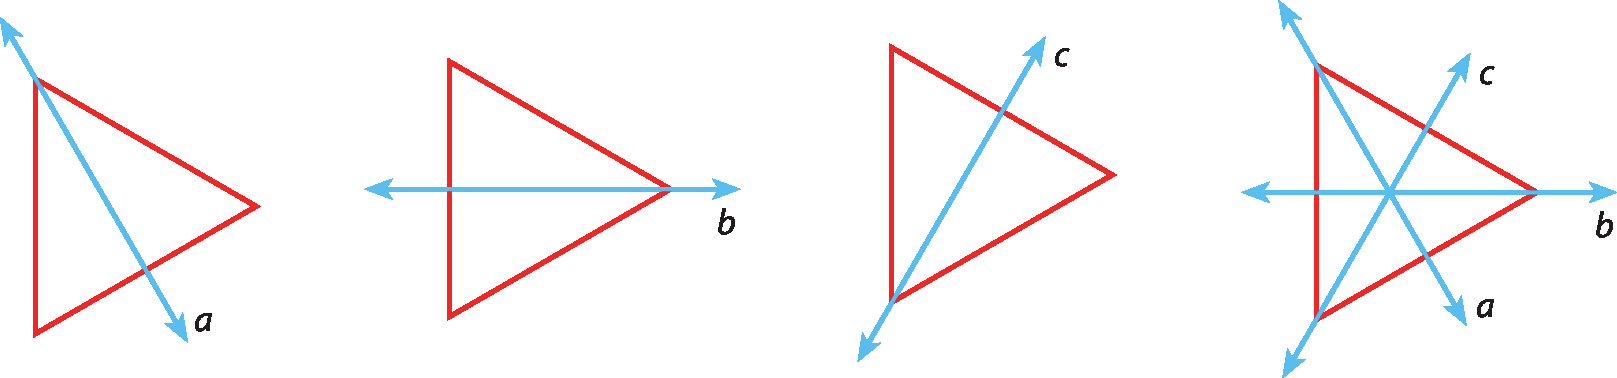 Ilustração. O mesmo triângulo repetido quatro vezes. Da esquerda para a direita: Um triângulo e sobre ele uma reta passando por um dos vértices e pelo ponto médio do lado oposto a esse vértice. A reta é nomeada como a.  Outro triângulo e sobre ele uma reta passando por outro vértice e pelo ponto médio do lado oposto a esse vértice. A reta é nomeada como b.  Outro triângulo e sobre ele uma reta passando por outro vértice e pelo ponto médio do lado oposto a esse vértice. A reta é nomeada como c.  Outro triângulo e sobre ele as três retas dos triângulos anteriores. Elas são nomeadas como a, b e c e se cruzam no centro desse triângulo.